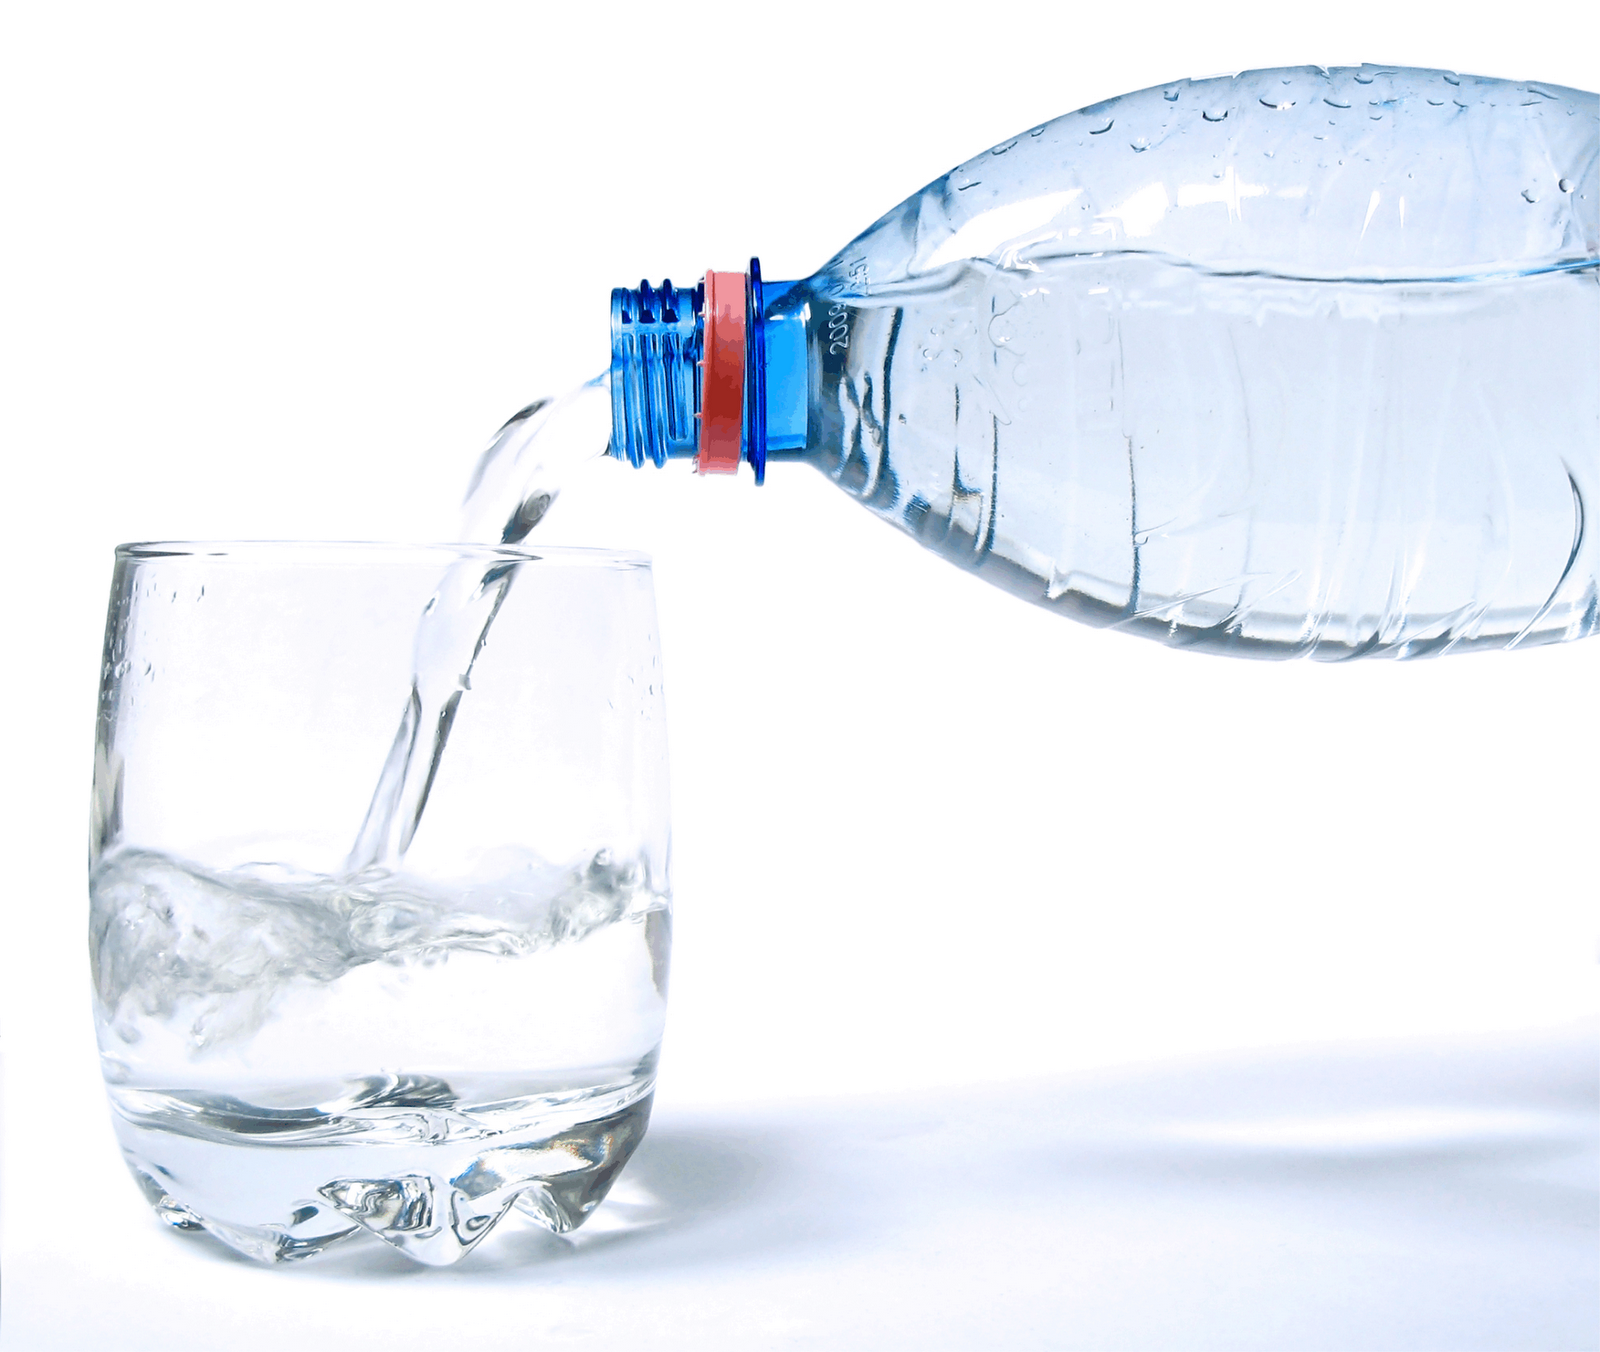 Água mineral vendida para matar a sede no Nordeste